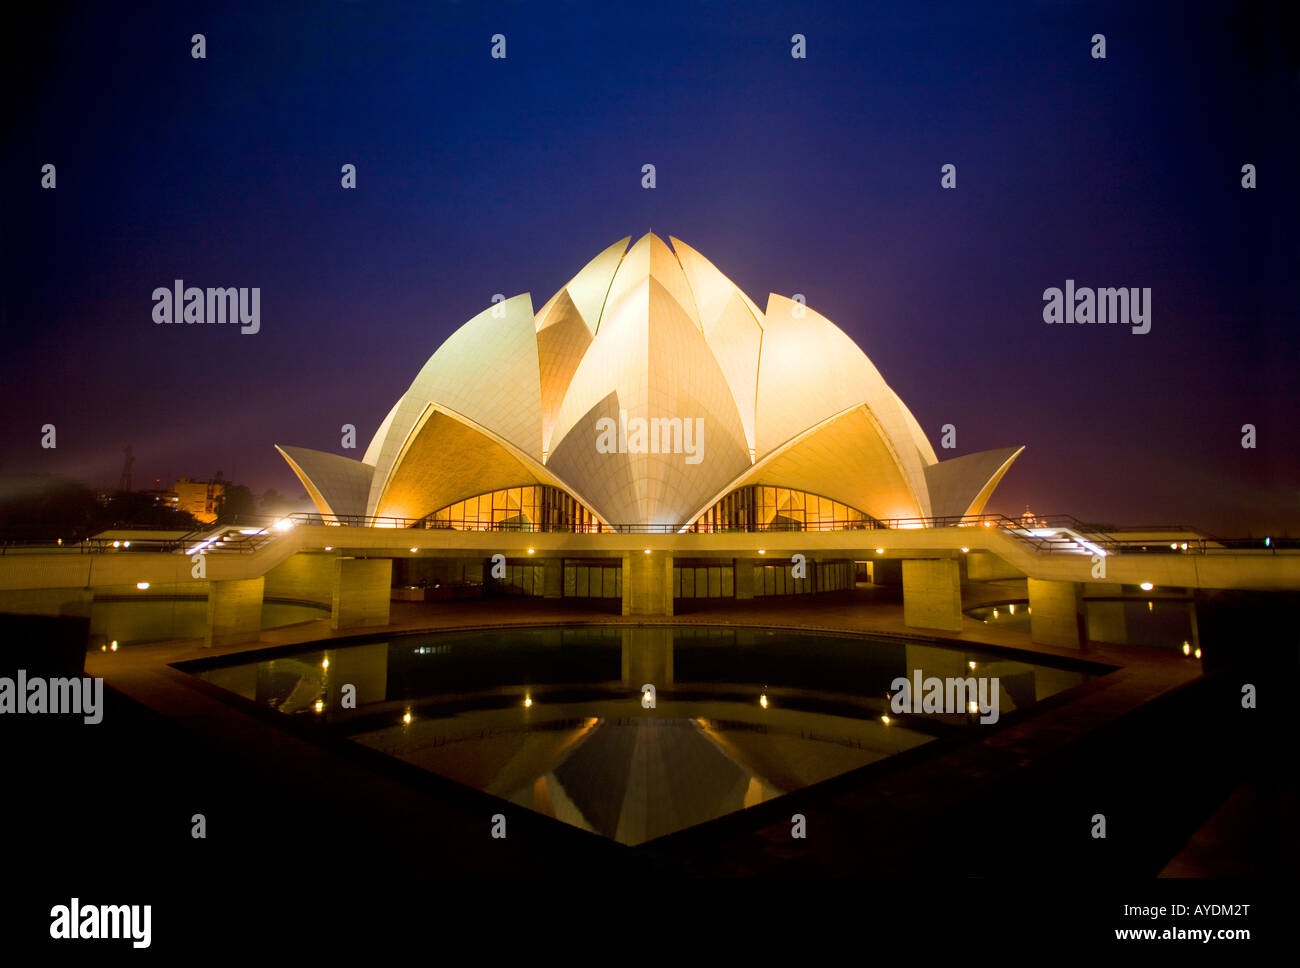 Lotus Temple (Bahai faith) at twilight, New Delhi, India Stock Photo